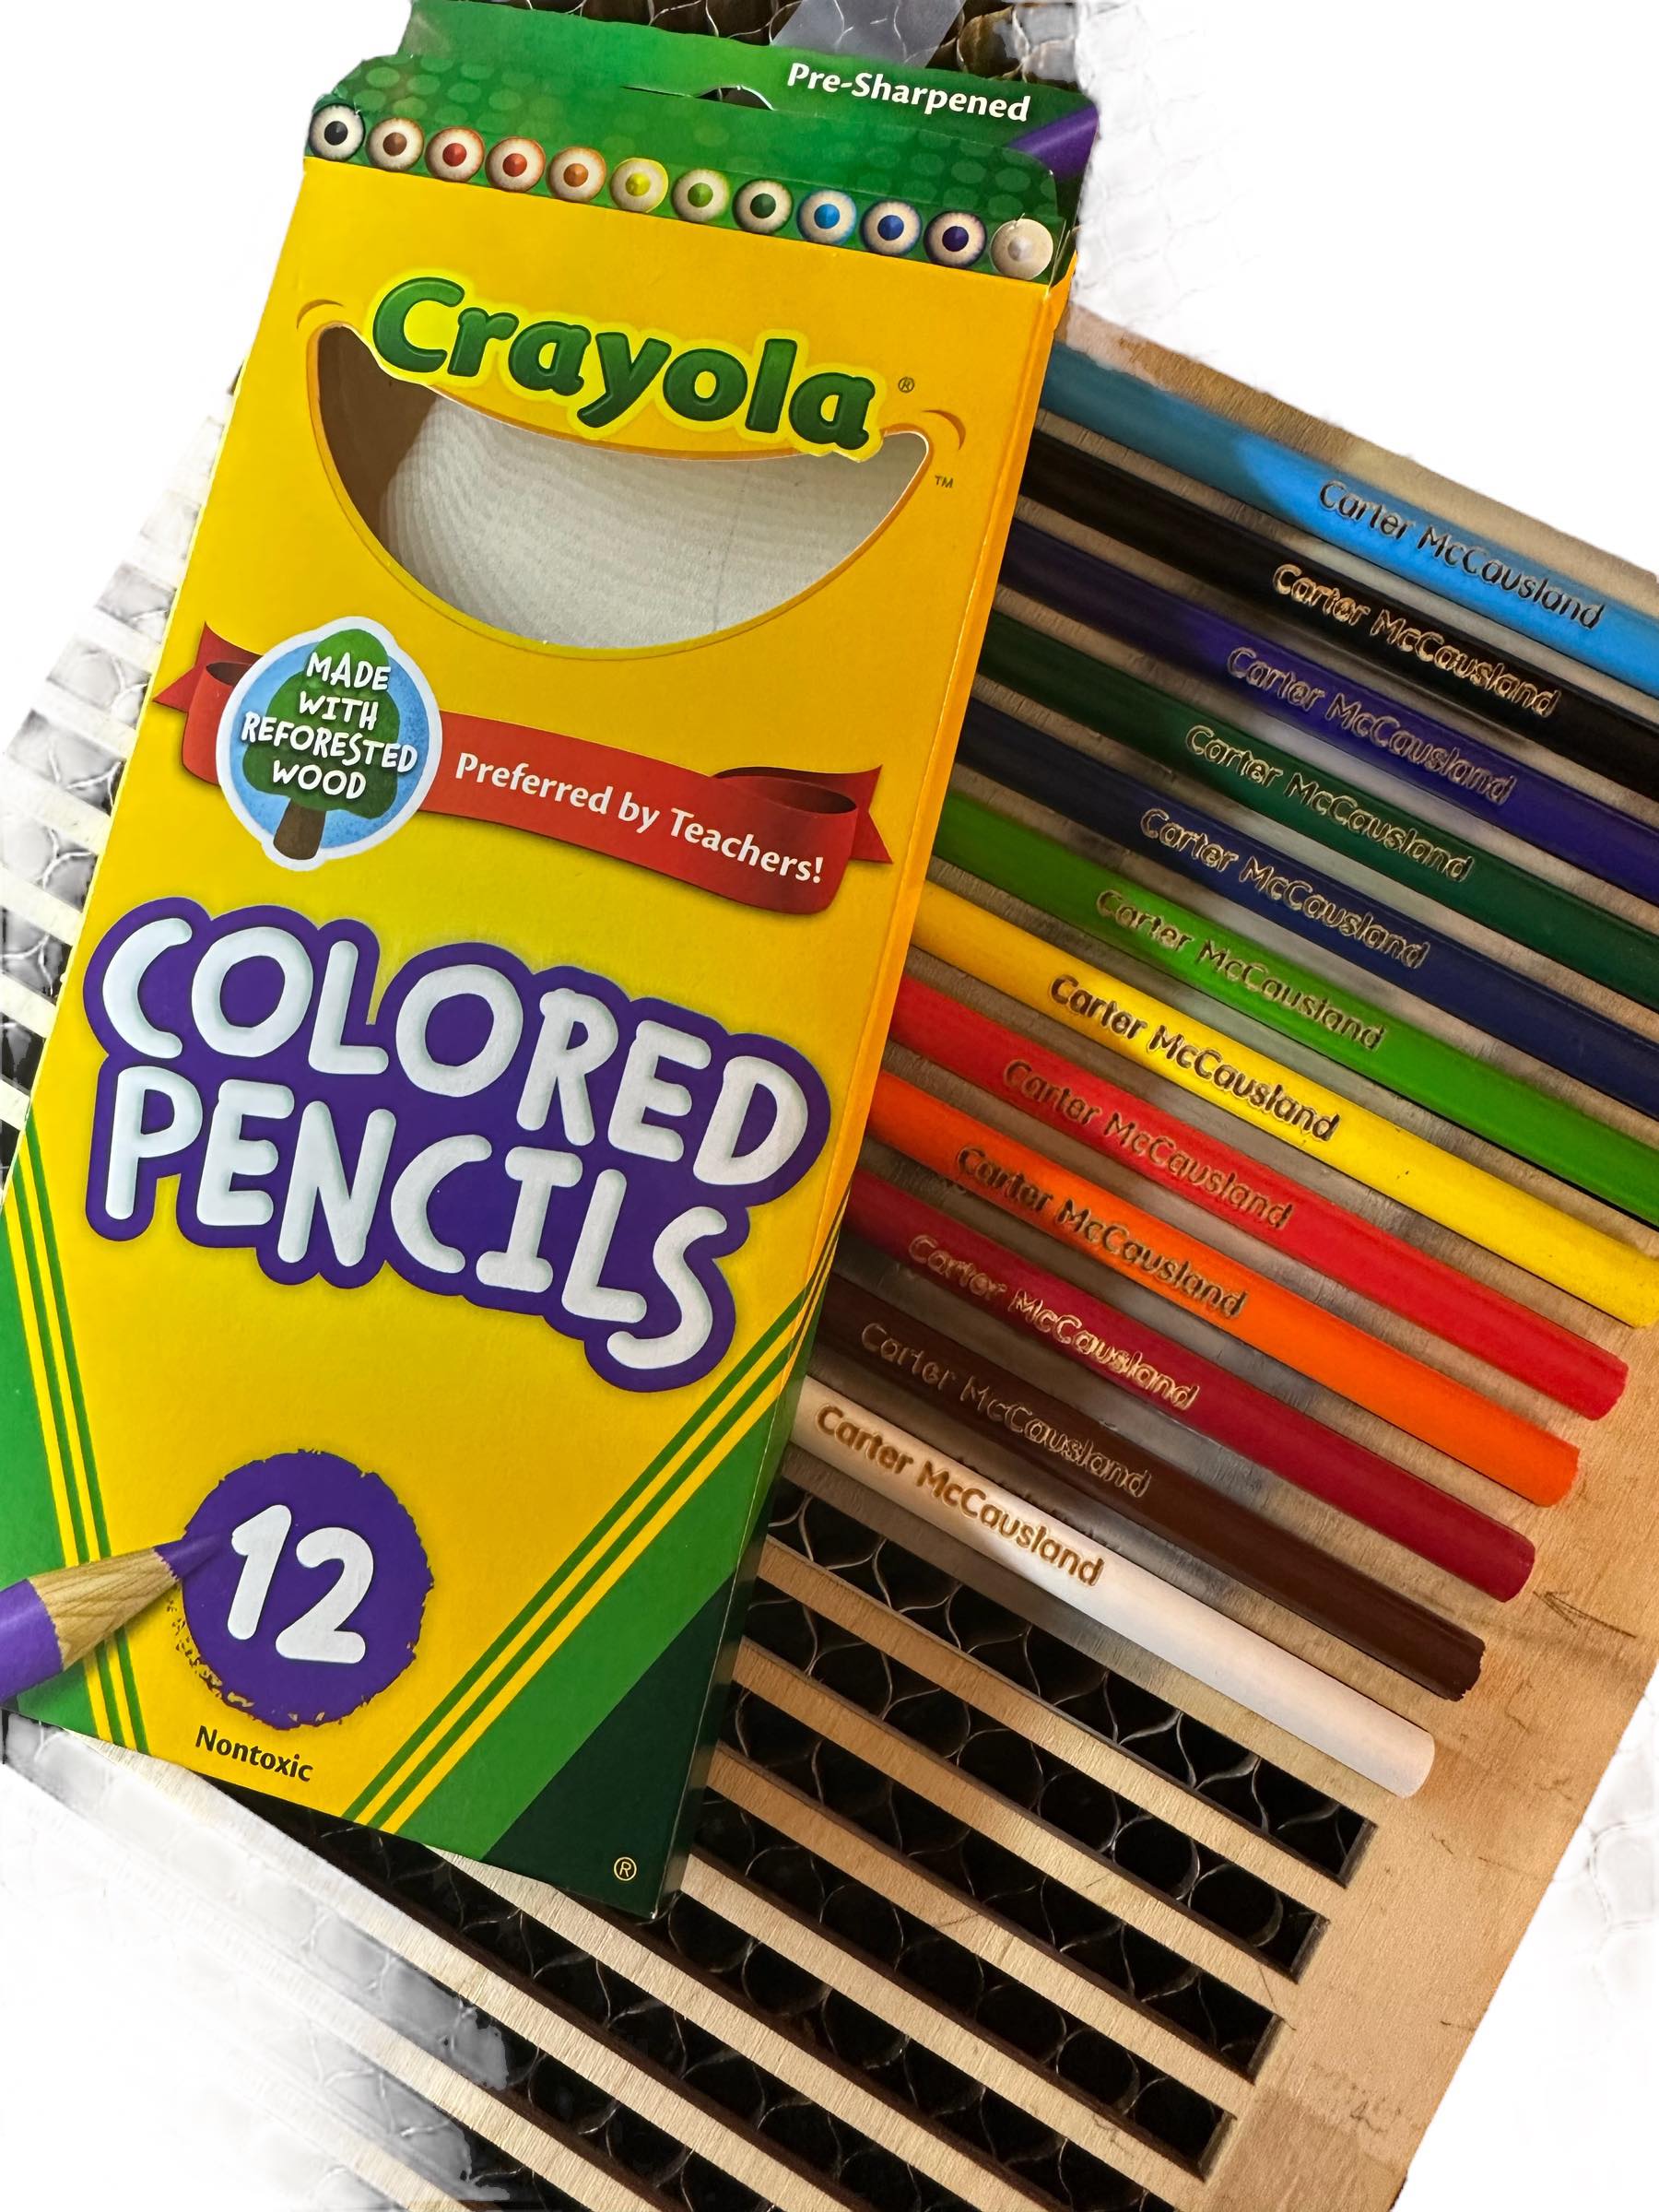 Tiny coloring pencils : r/pencils